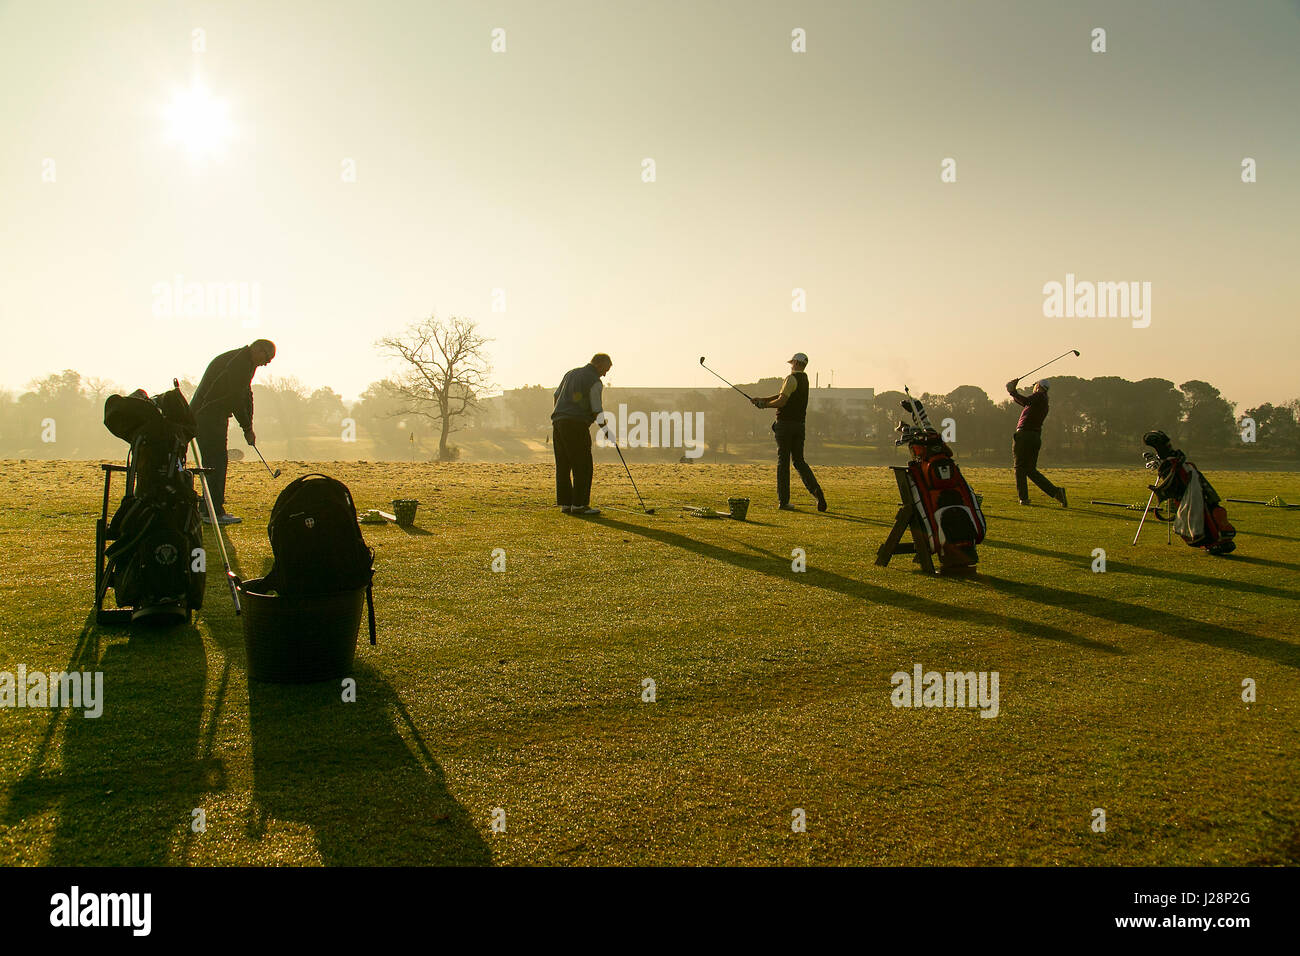 Les golfeurs se balançant clubs de golf de soleil du matin sur la pratique d'entraînement à l'aube. Banque D'Images